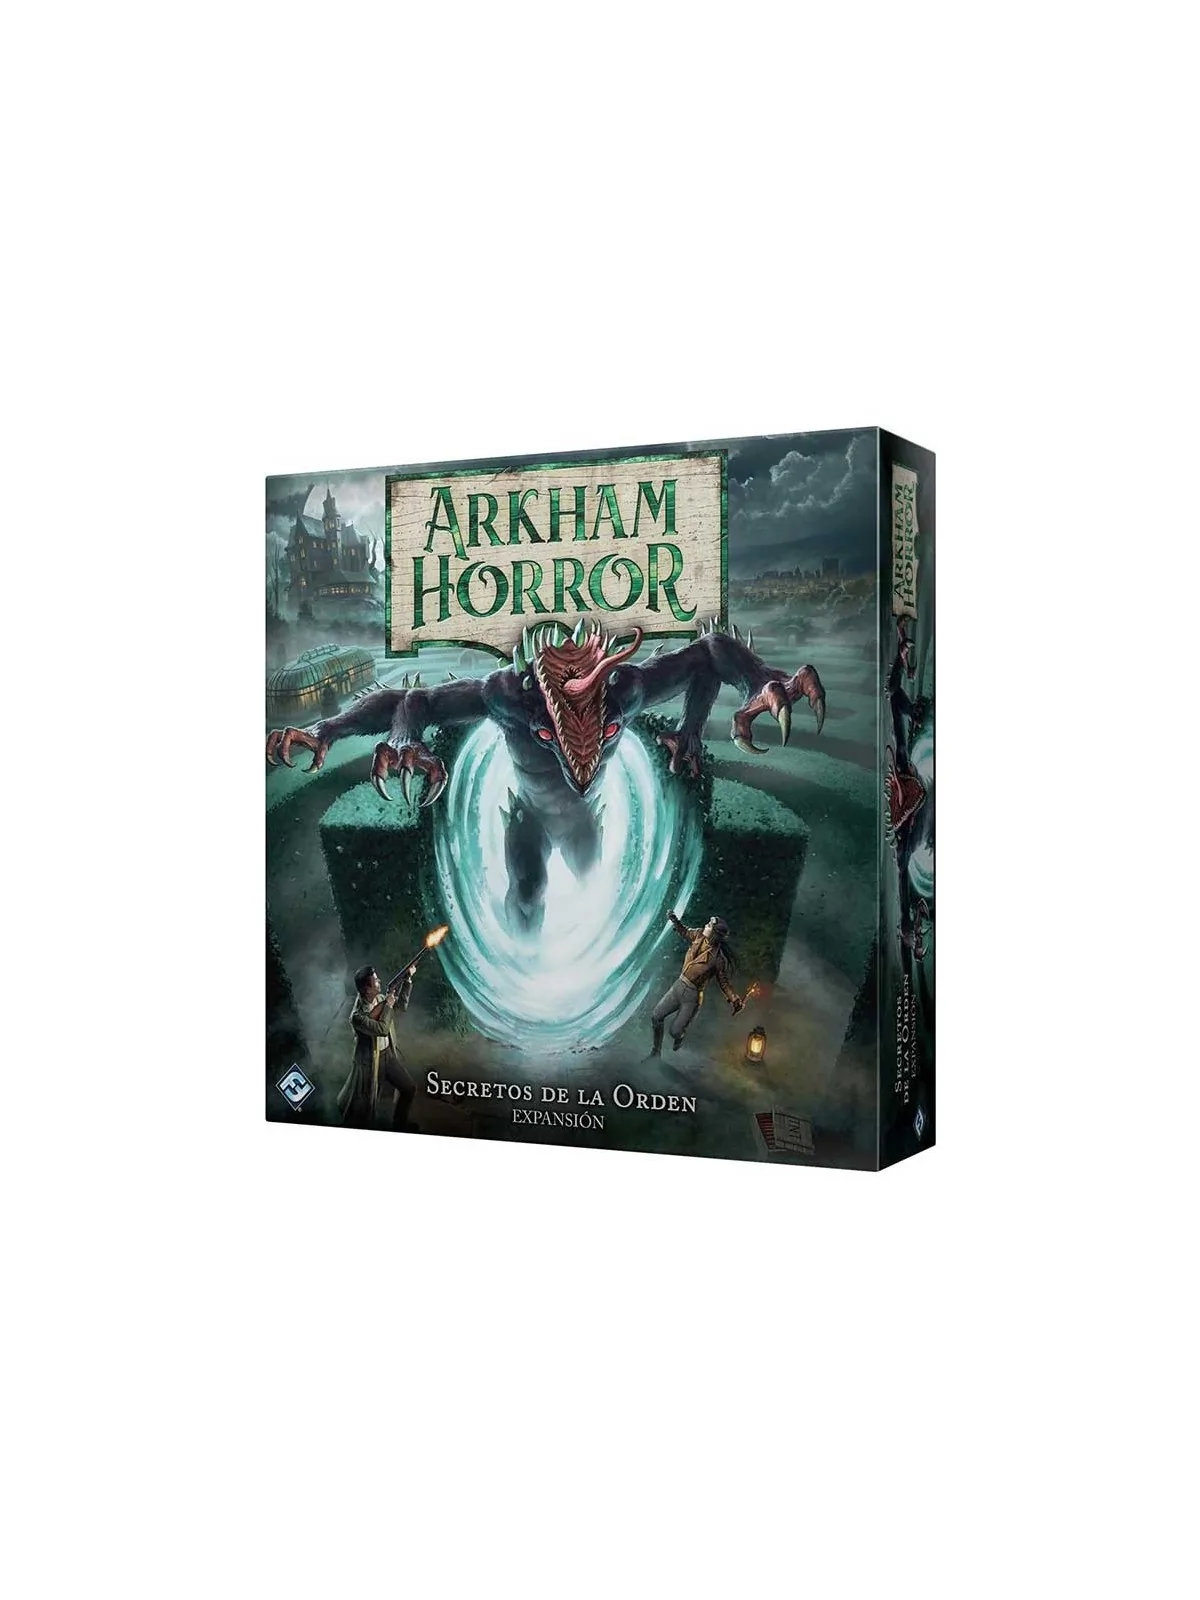 Comprar Arkham Horror: Secretos de la Orden barato al mejor precio 40,